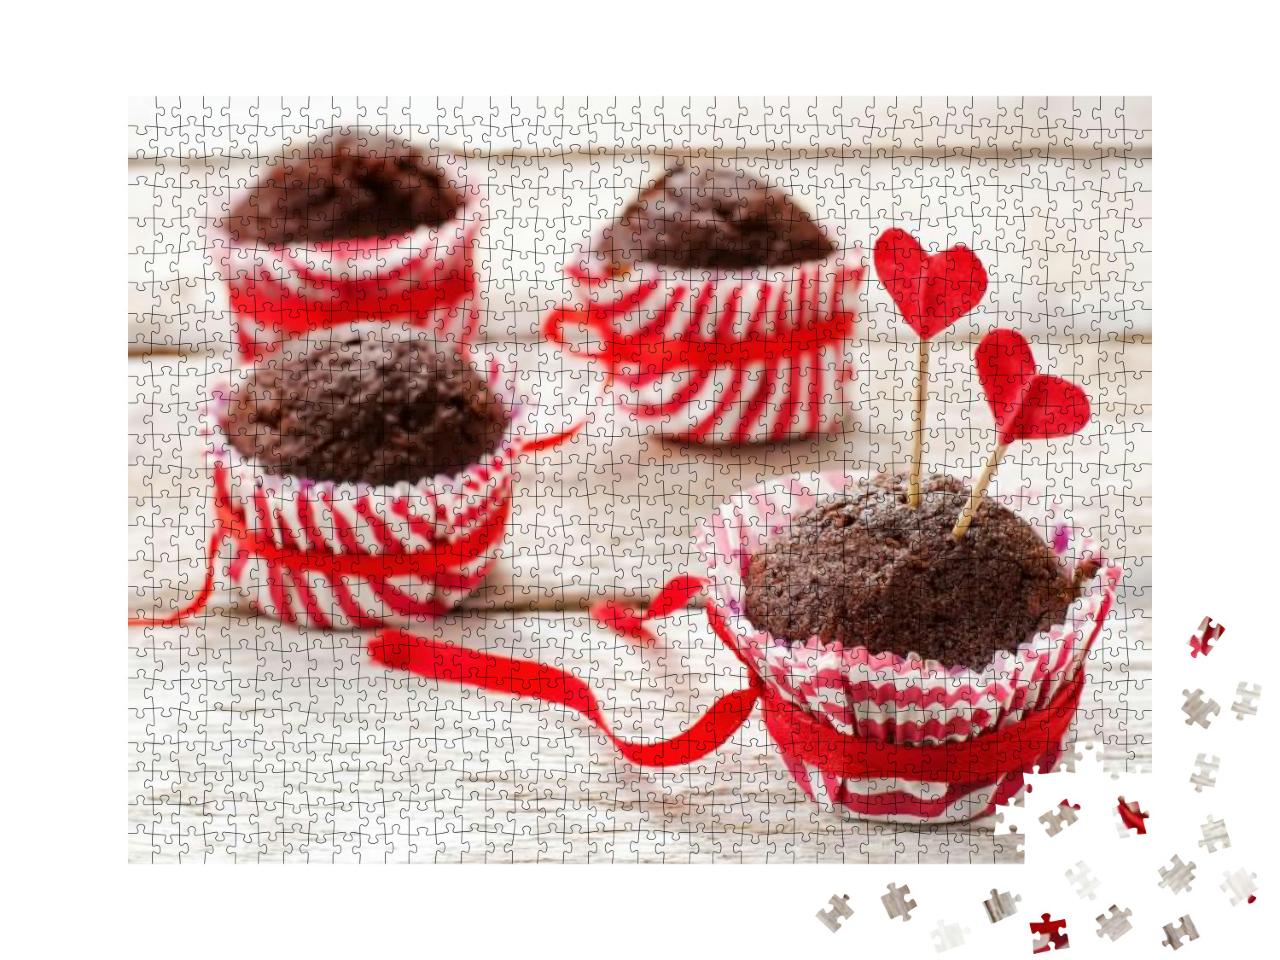 Puzzle 1000 Teile „Schokoladenmuffins zum Valentinstag“